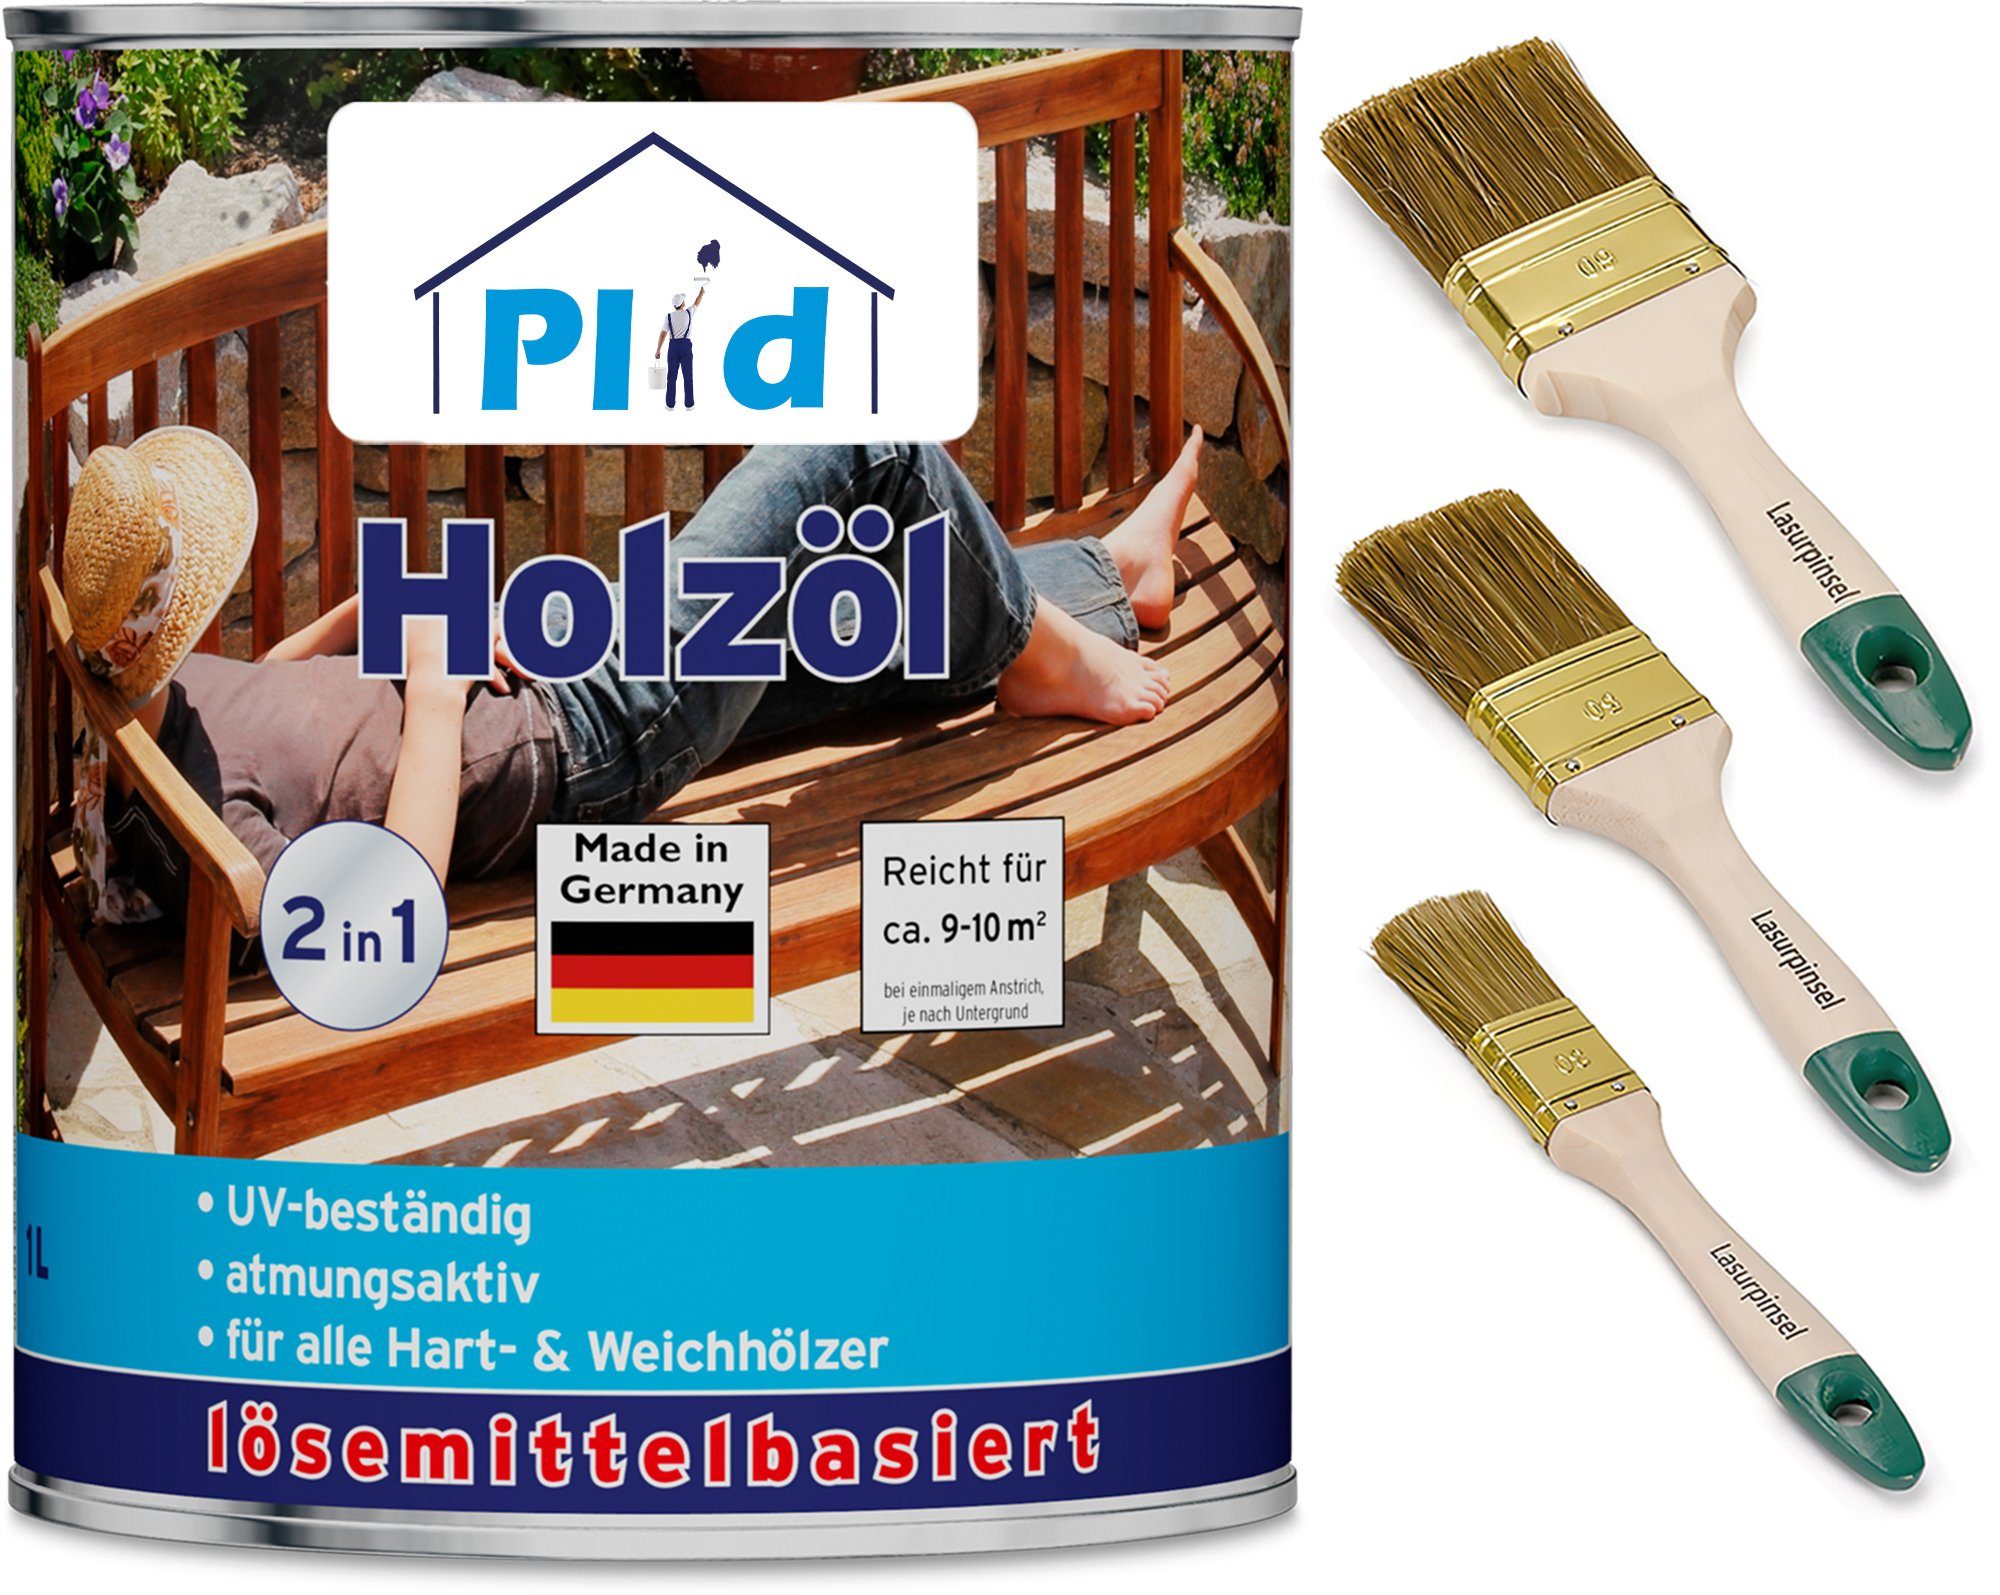 Holzschutz Holzöl plid Holzöl Teak Imprägnieröl Pflegeöl Premium Pinsel